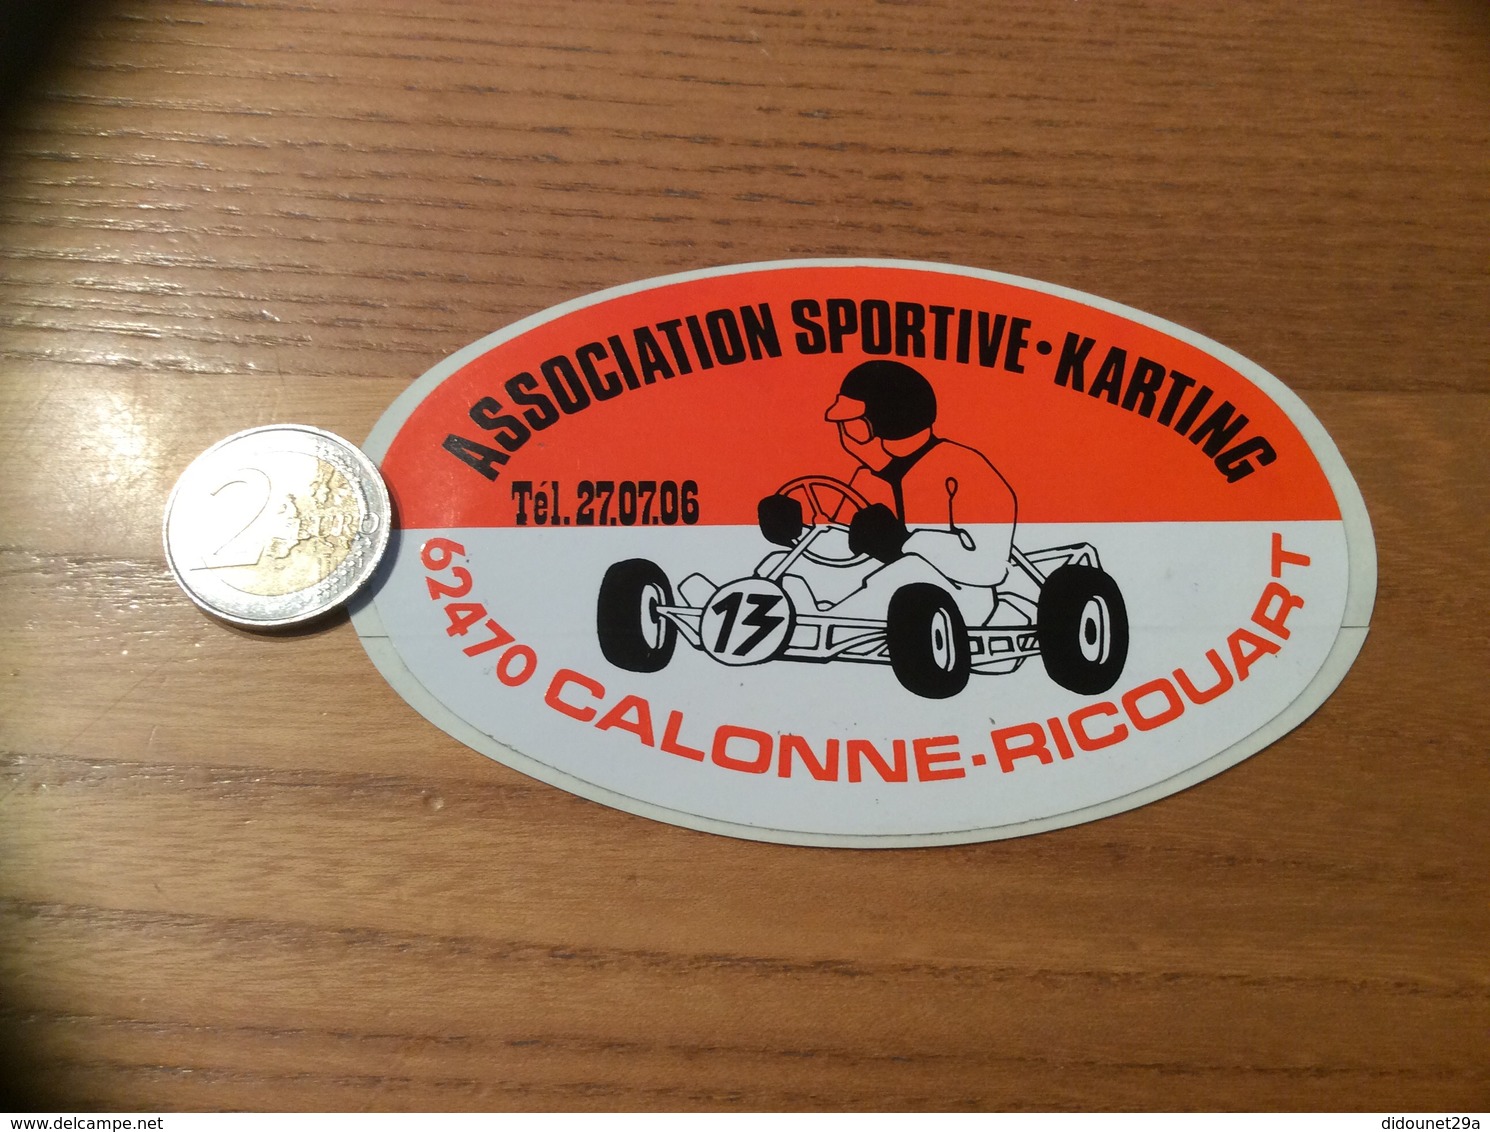 AUTOCOLLANT, Sticker «ASSOCIATION SPORTIVE KARTING - CALONNE-RICOUART (62)» - Autocollants